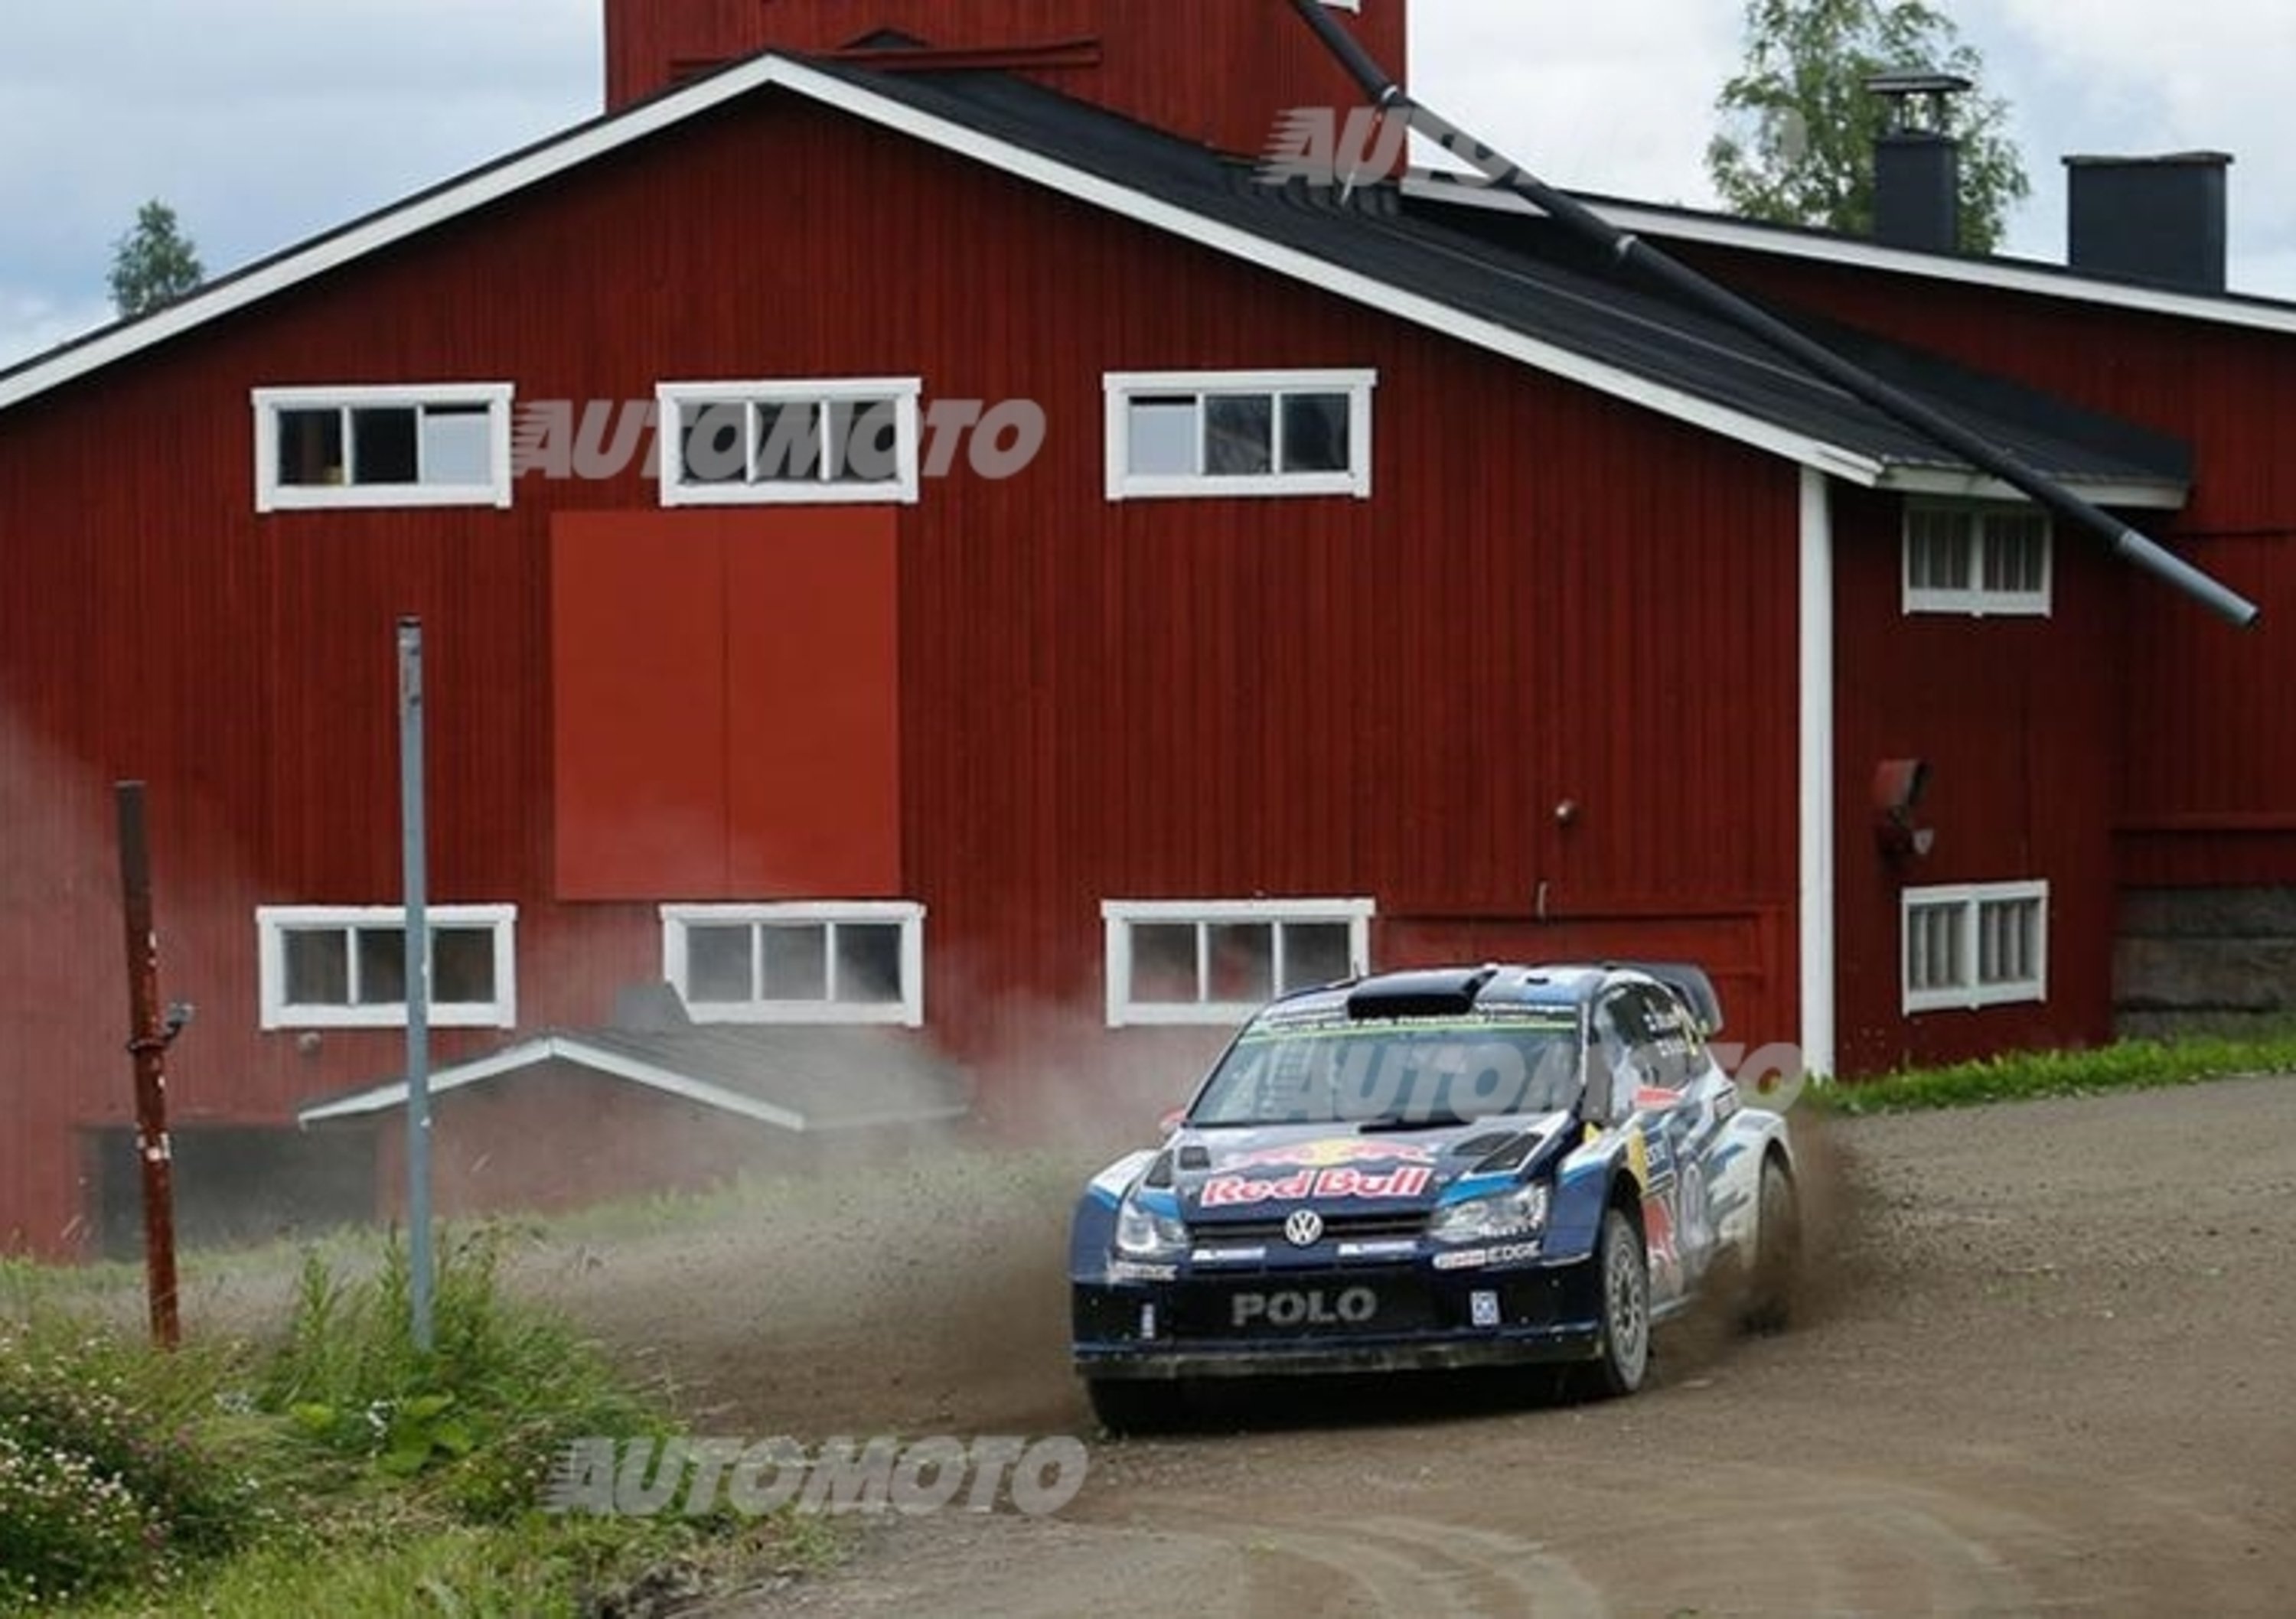 WRC Finlandia. Latvala (VW Polo R) a un passo dalla vittoria